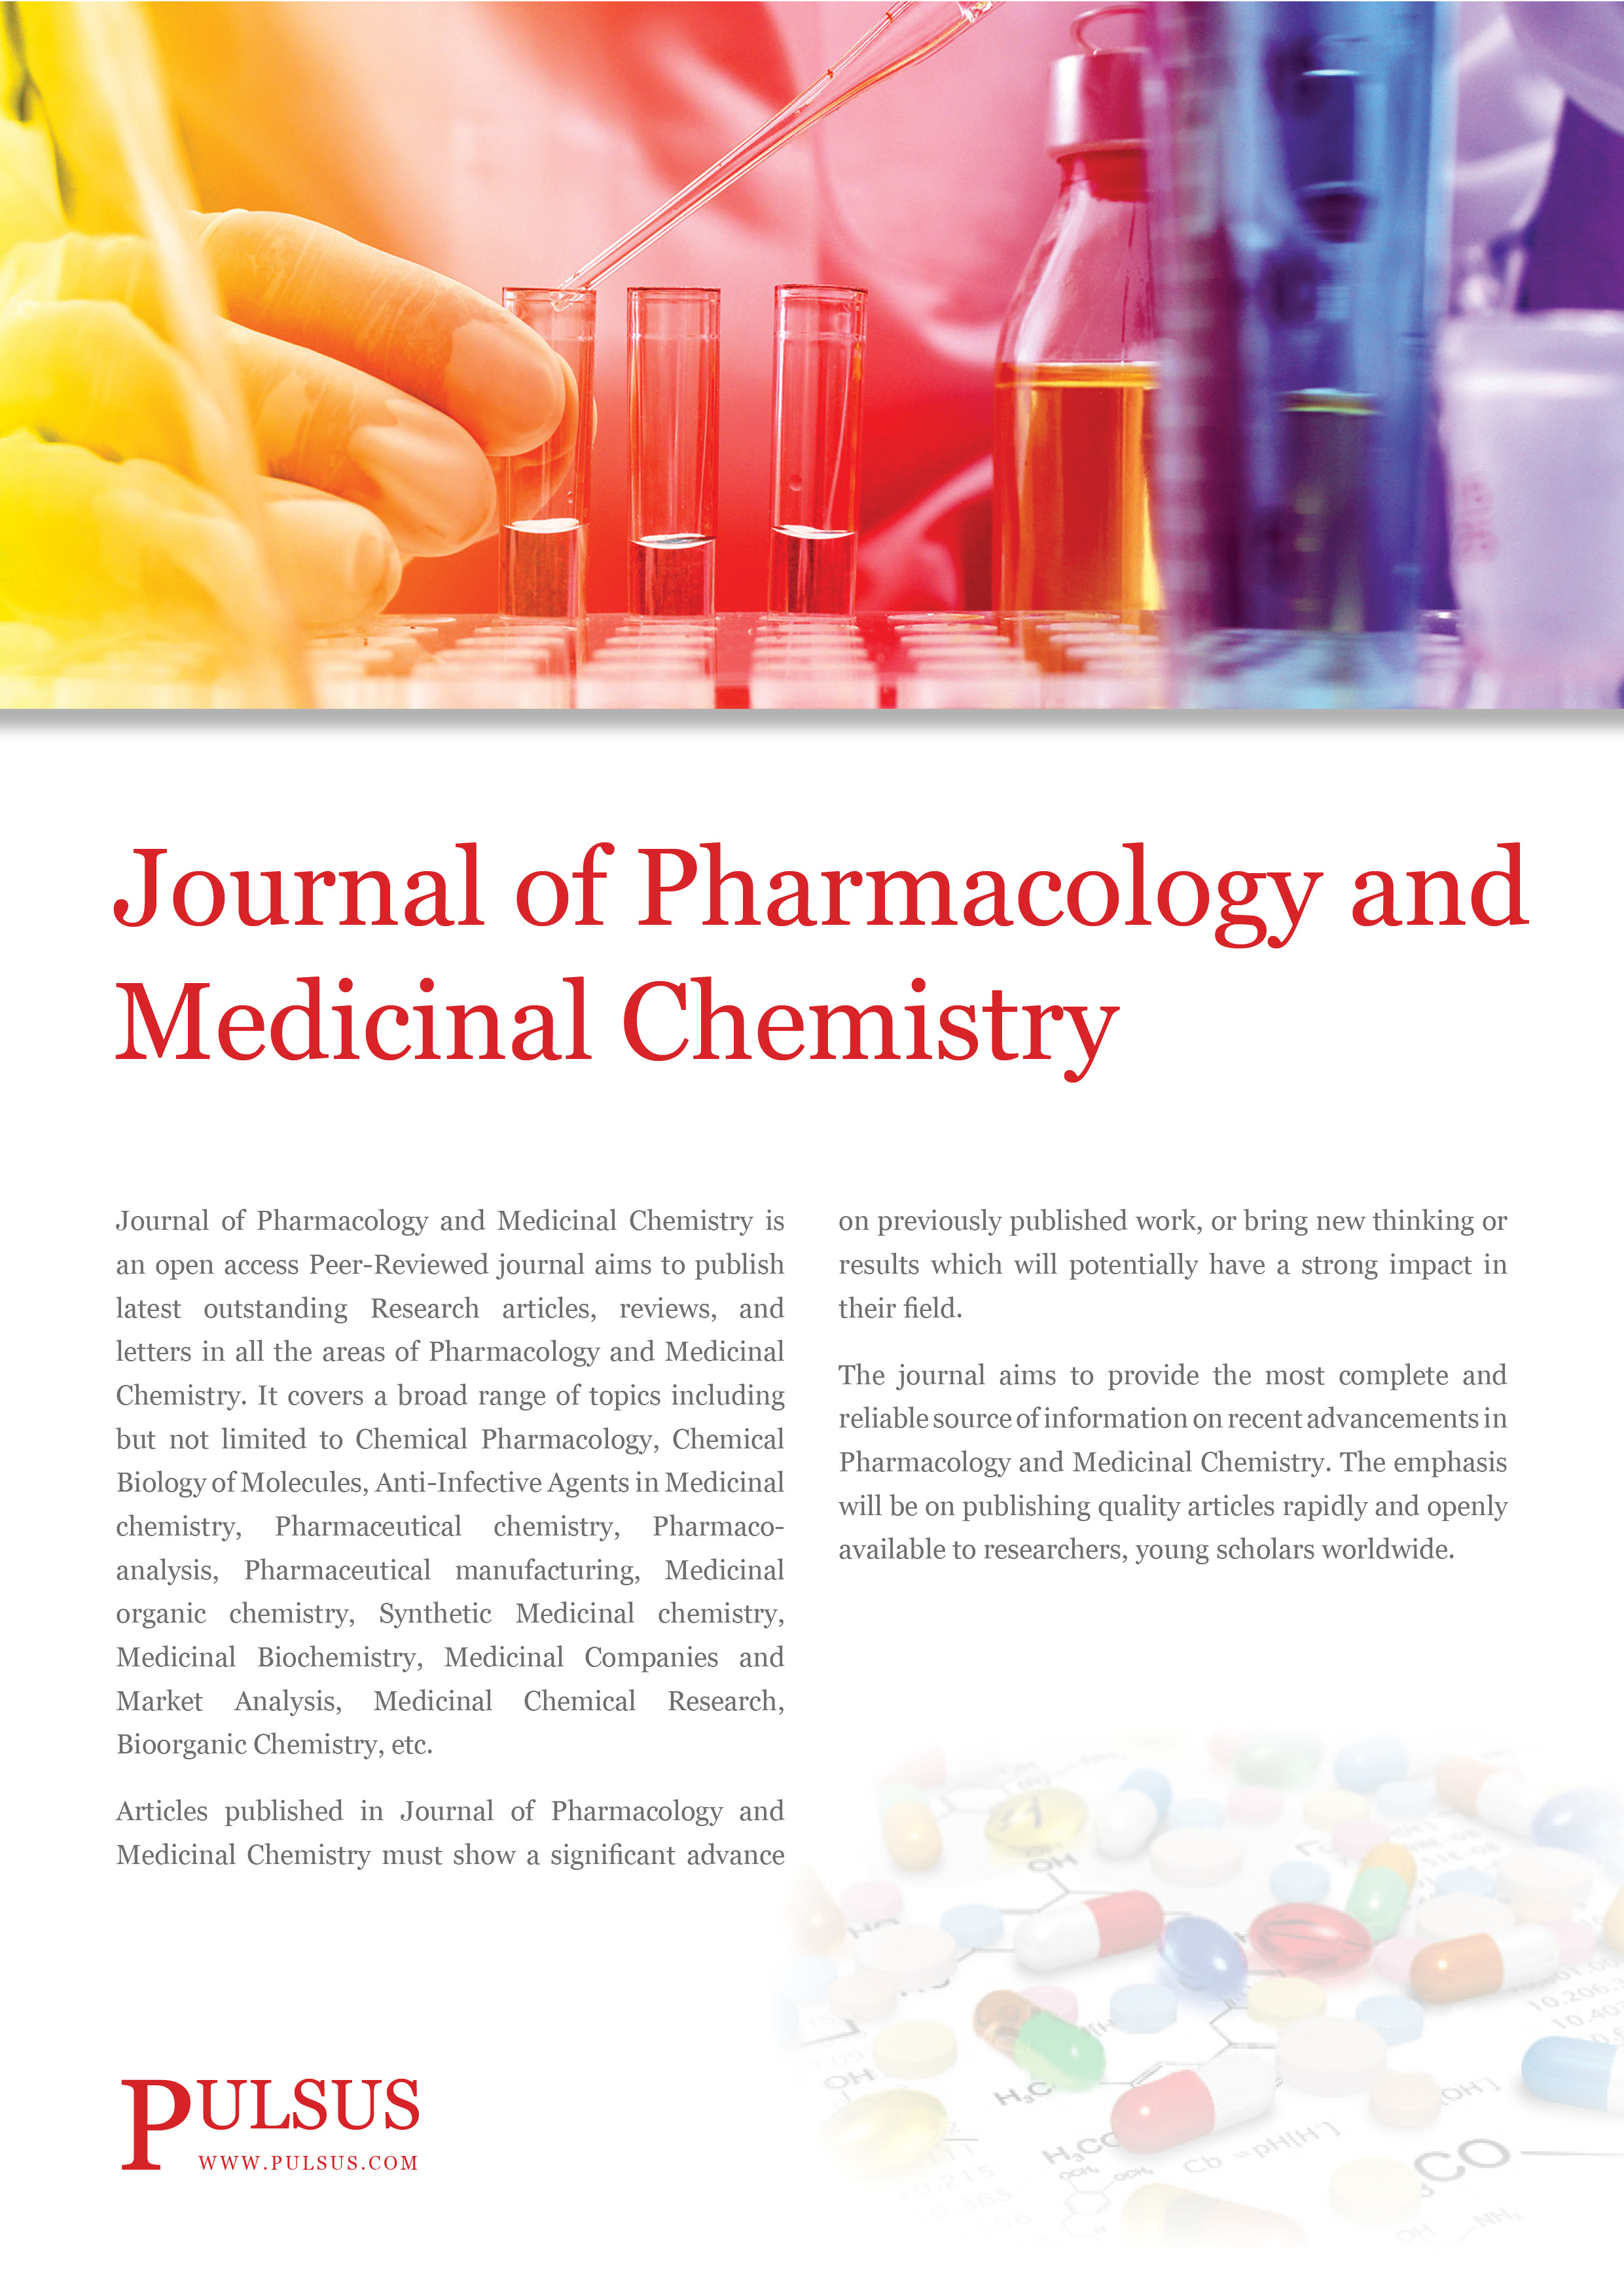 Revista de Farmacologia e Química Medicinal